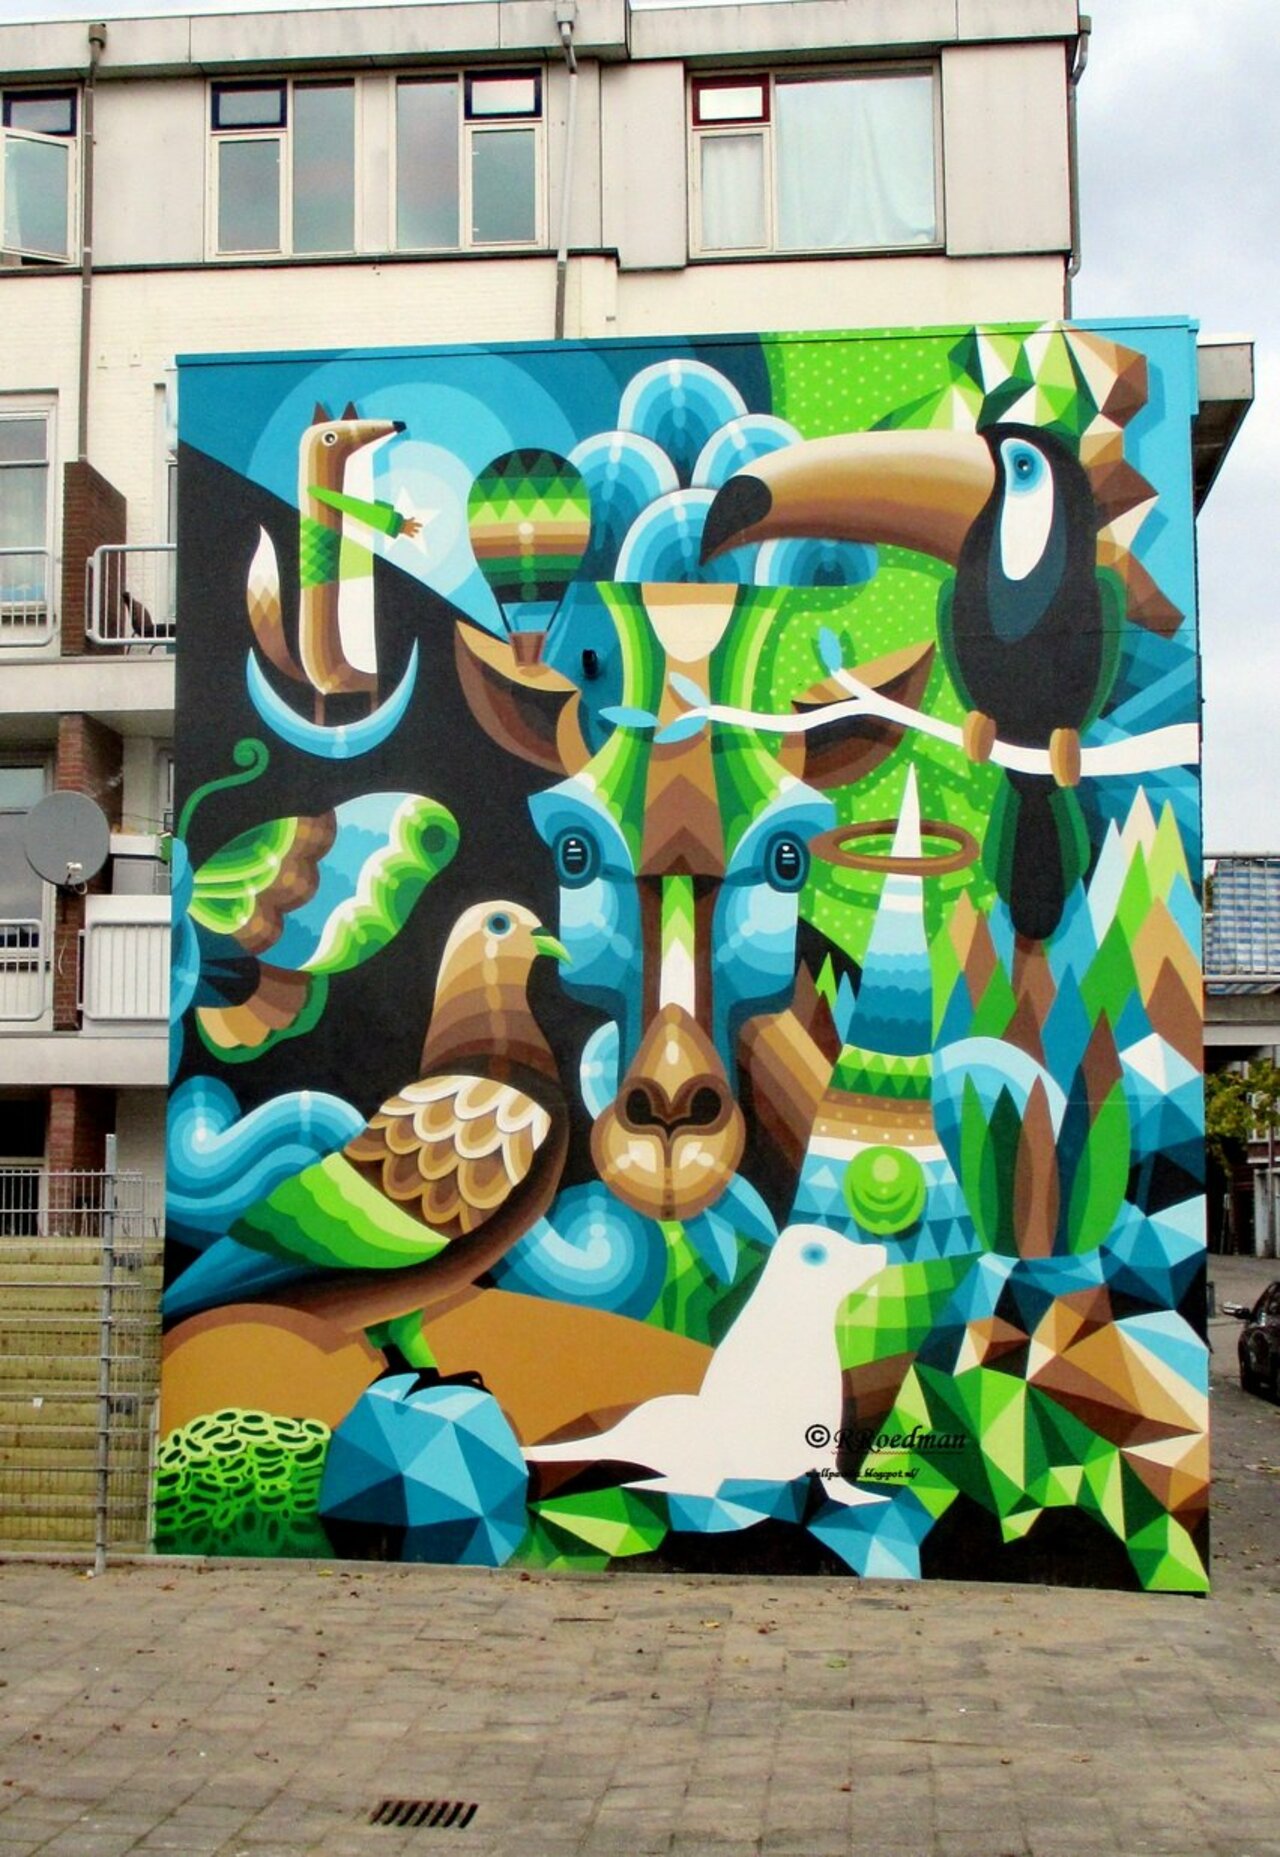 RT @RRoedman: #streetart #graffiti #mural nice work from #EelcoVanDenBerg in #Rotterdam ,5 pics at http://wallpaintss.blogspot.nl https://t.co/Fpezh2lmL3